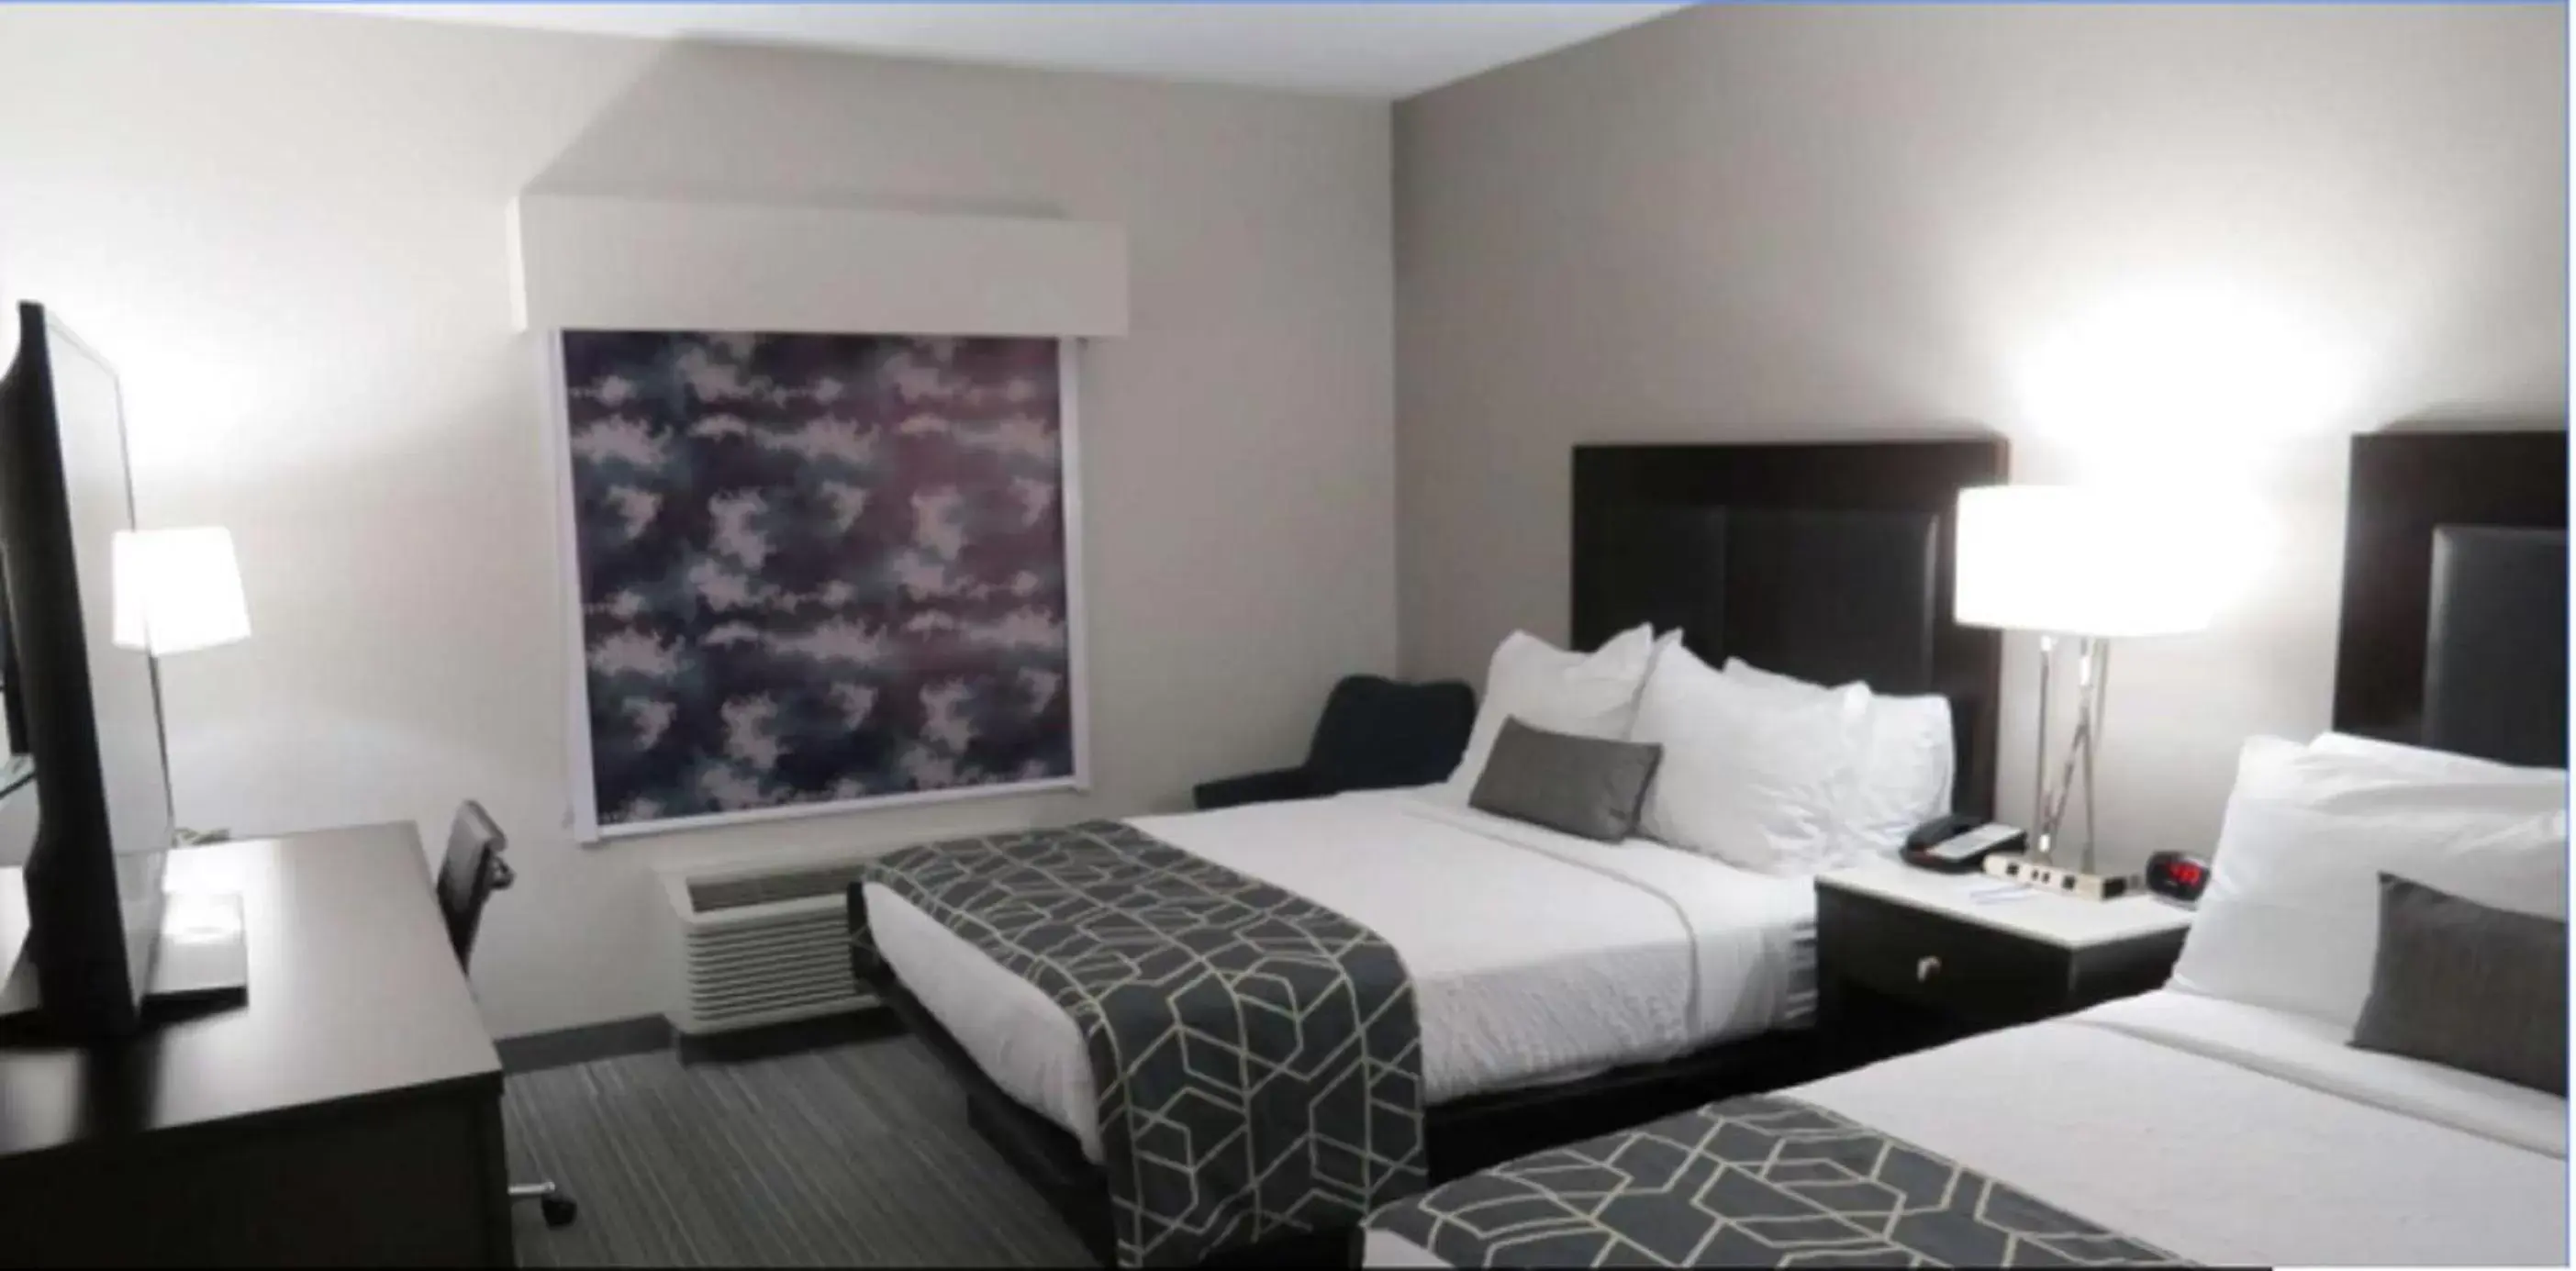 Bedroom, Bed in Best Western Plus Wilkes Barre-Scranton Airport Hotel